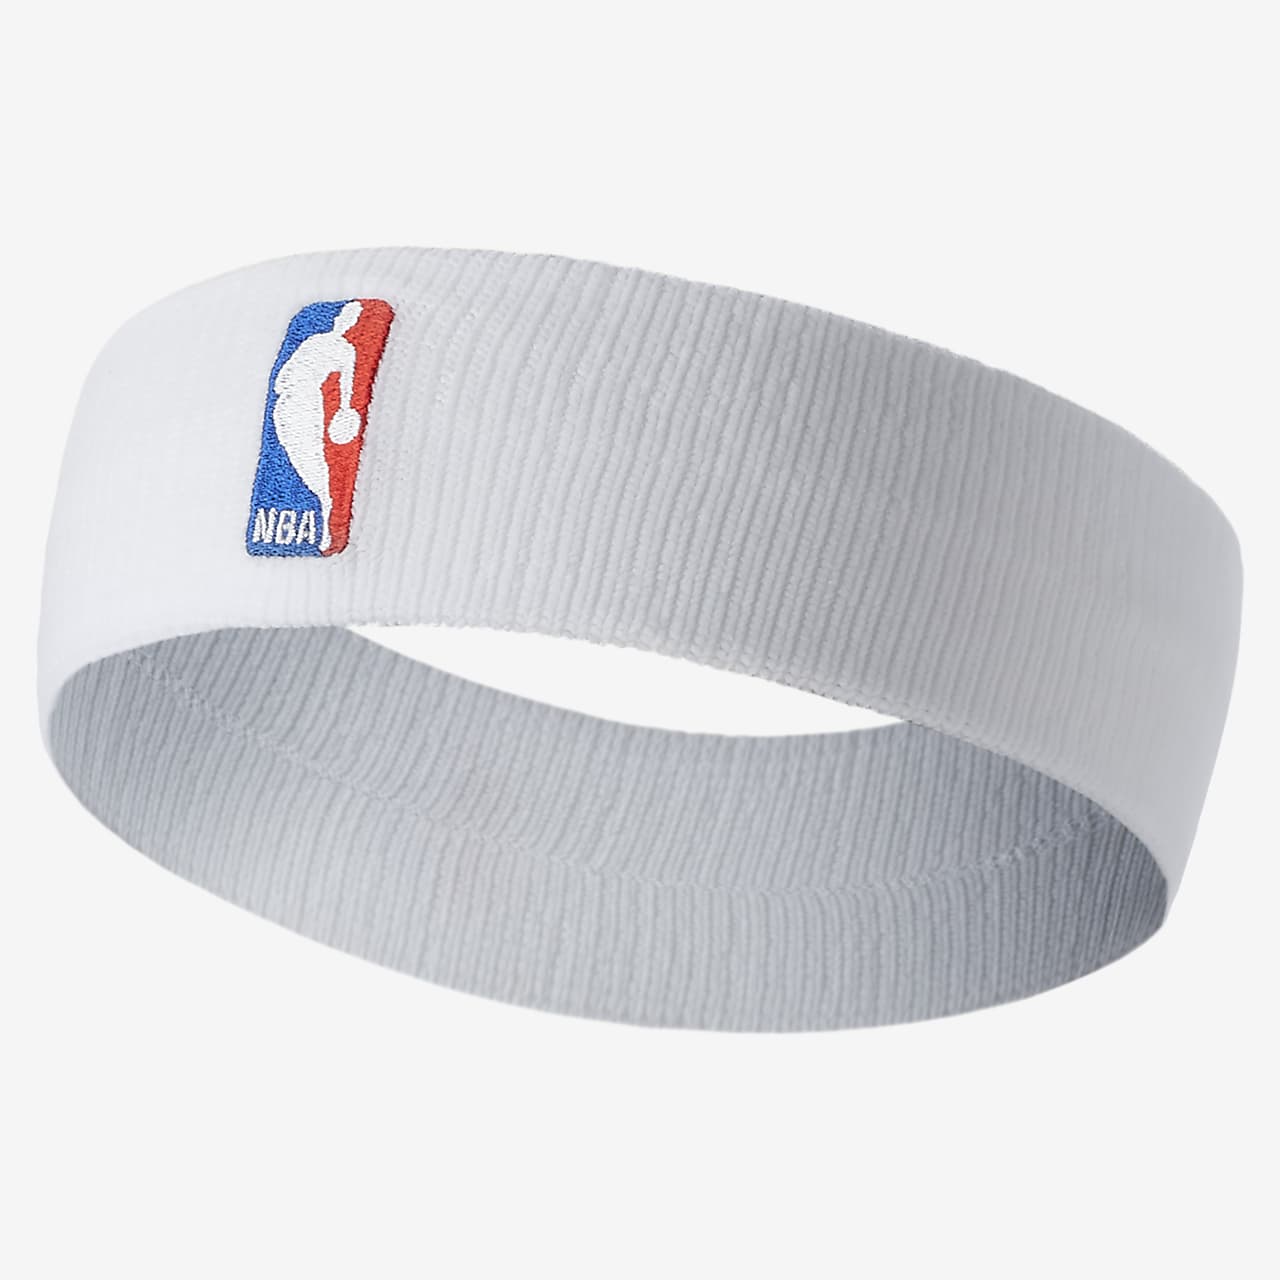 Nike/NBA headband